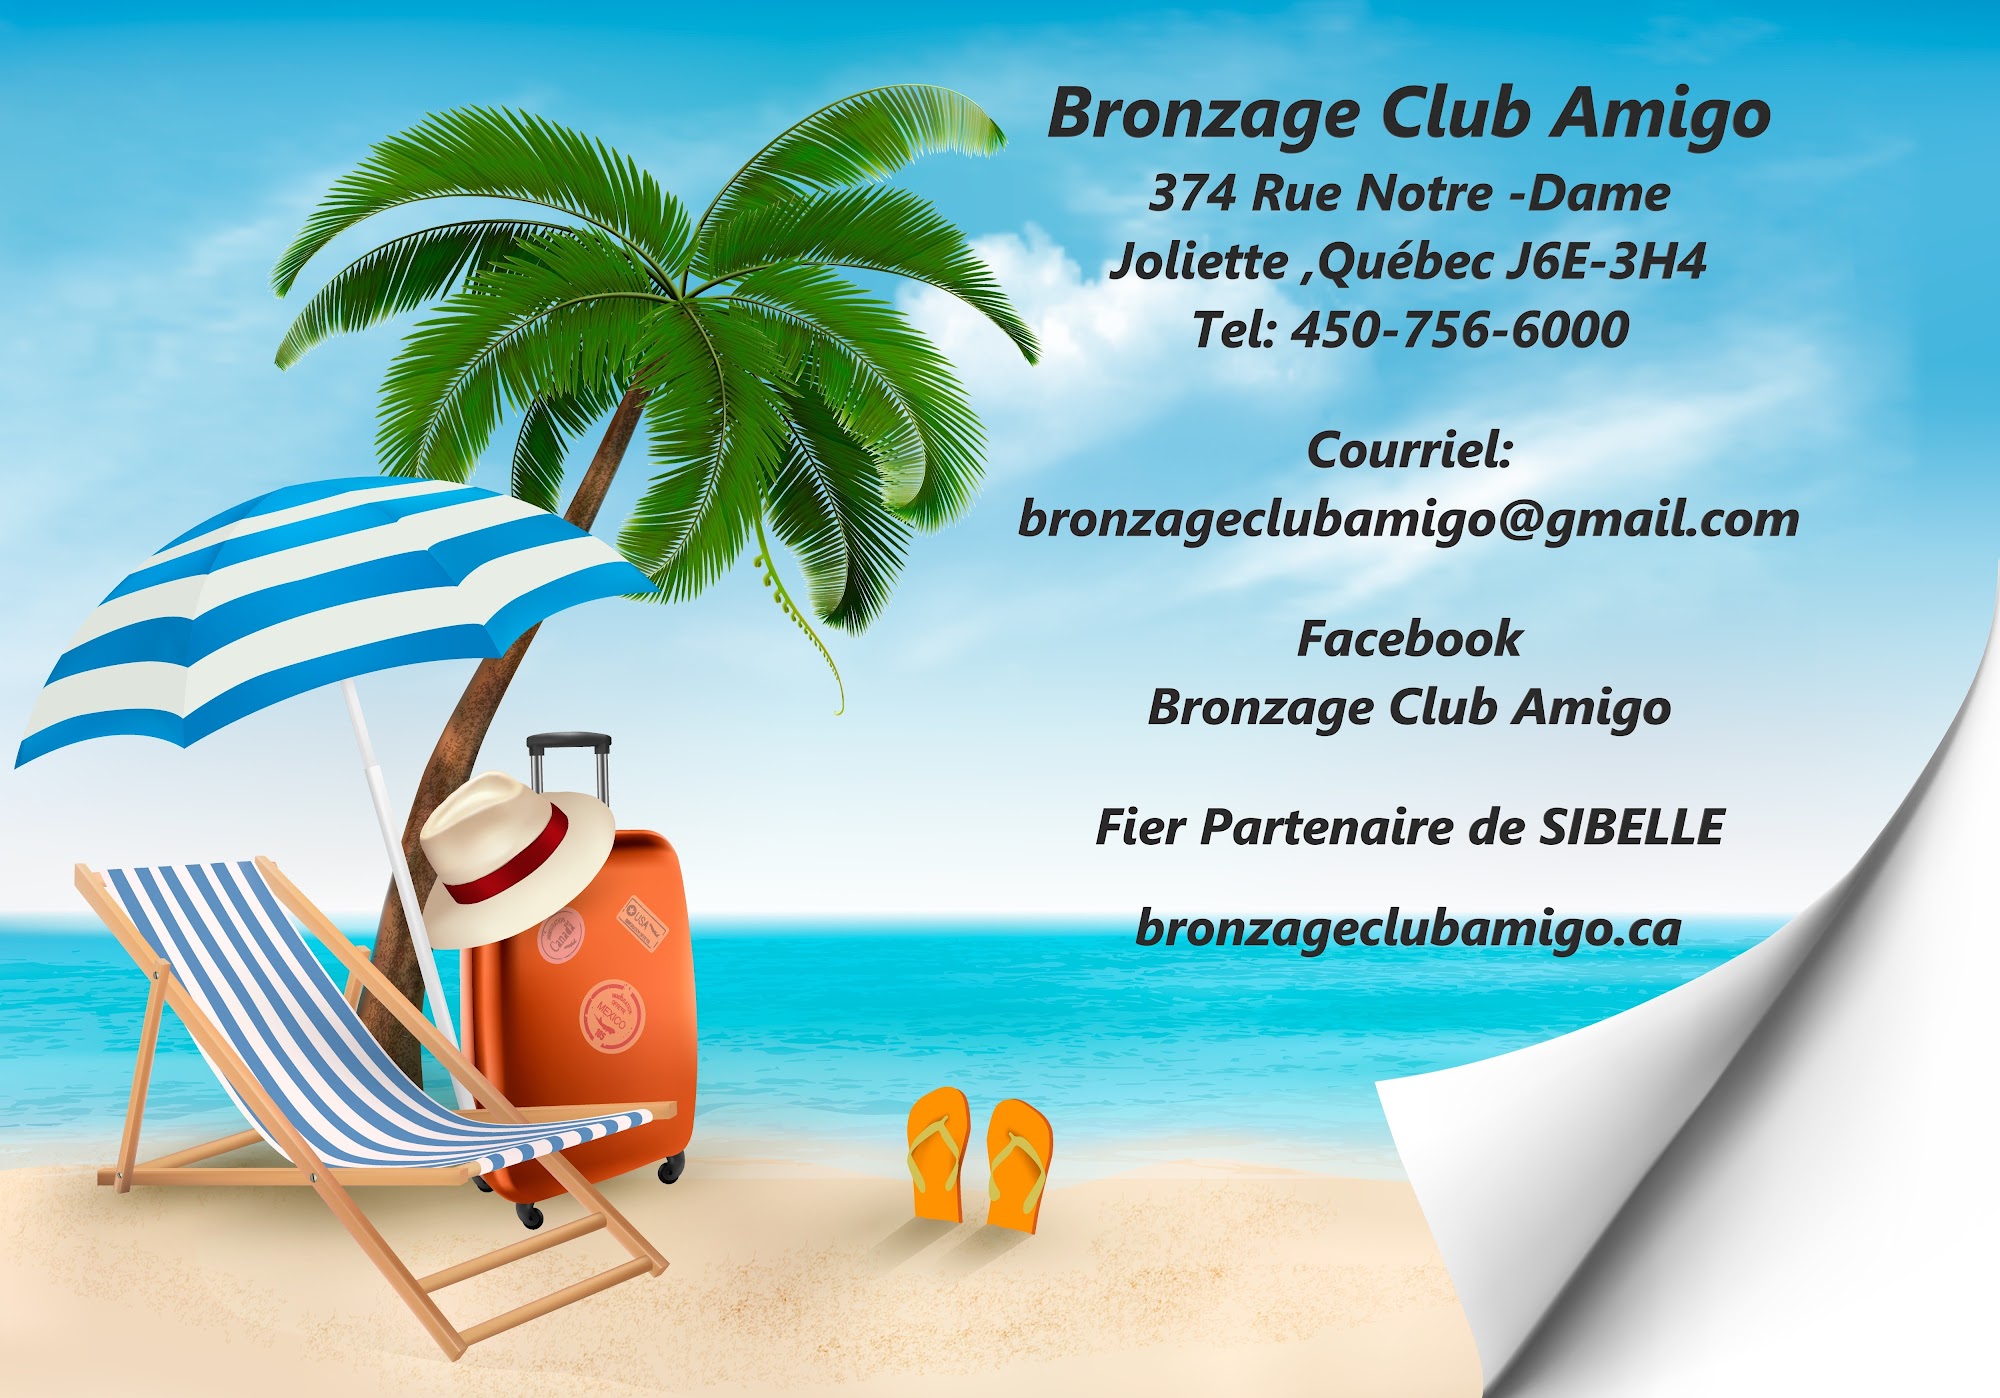 Bronzage Club Amigo 18+ 374 Rue Notre Dame, Joliette Quebec J6E 3H4